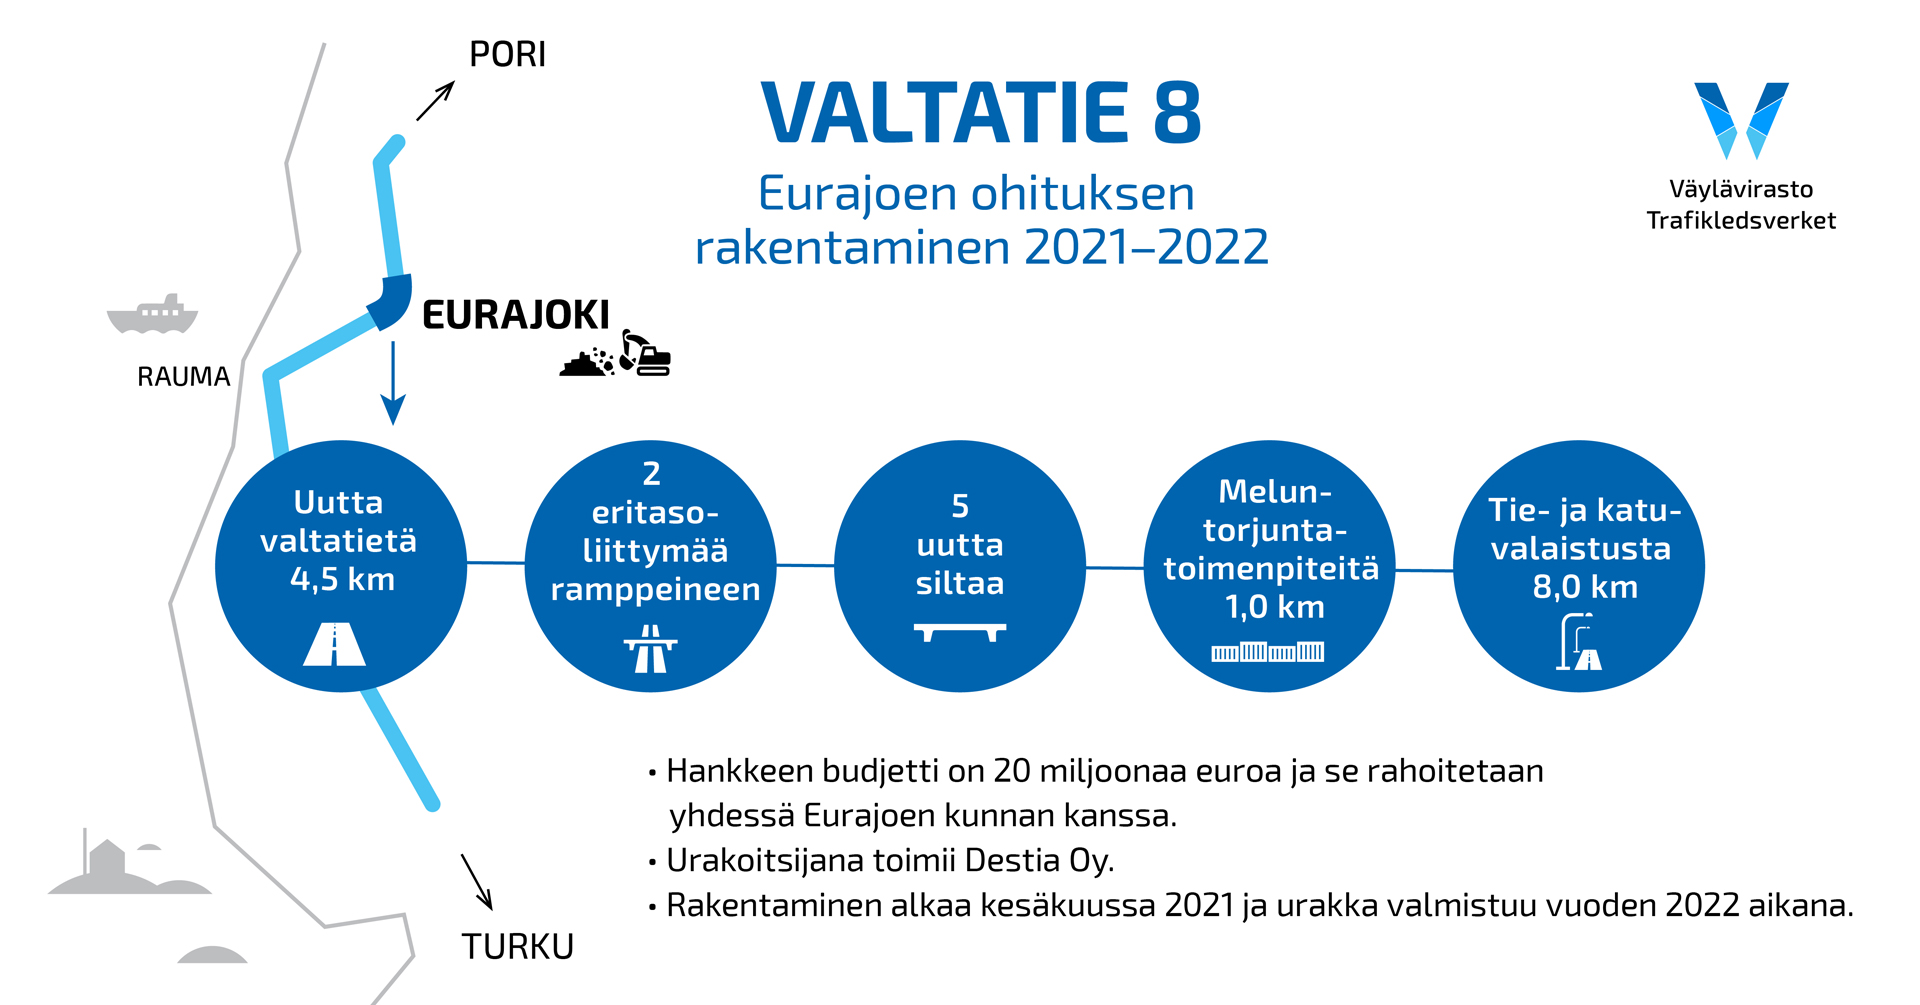 Kartta, jossa lukee: Valtatie 8 Eurajoen ohituksen rakentaminen 2021-2022. Uutta valtatietä 4,5 km, 2 eritasoliittymää ramppeineen, 5 uutta siltaa, meluntorjuntatoimenpiteitä 5,0km, tie- ja katuvalaistusta 8,0km. Hankkeen budjetti on 20 miljoonaa euroa ja se rahoitetaan yhdessä Eurajoen kunnan kanssa. Urakoitsijana toimii Destia Oy, Rakentaminen alkaa kesäkuussa 2021 ja urakka valmistuu vuoden 2022 aikana.